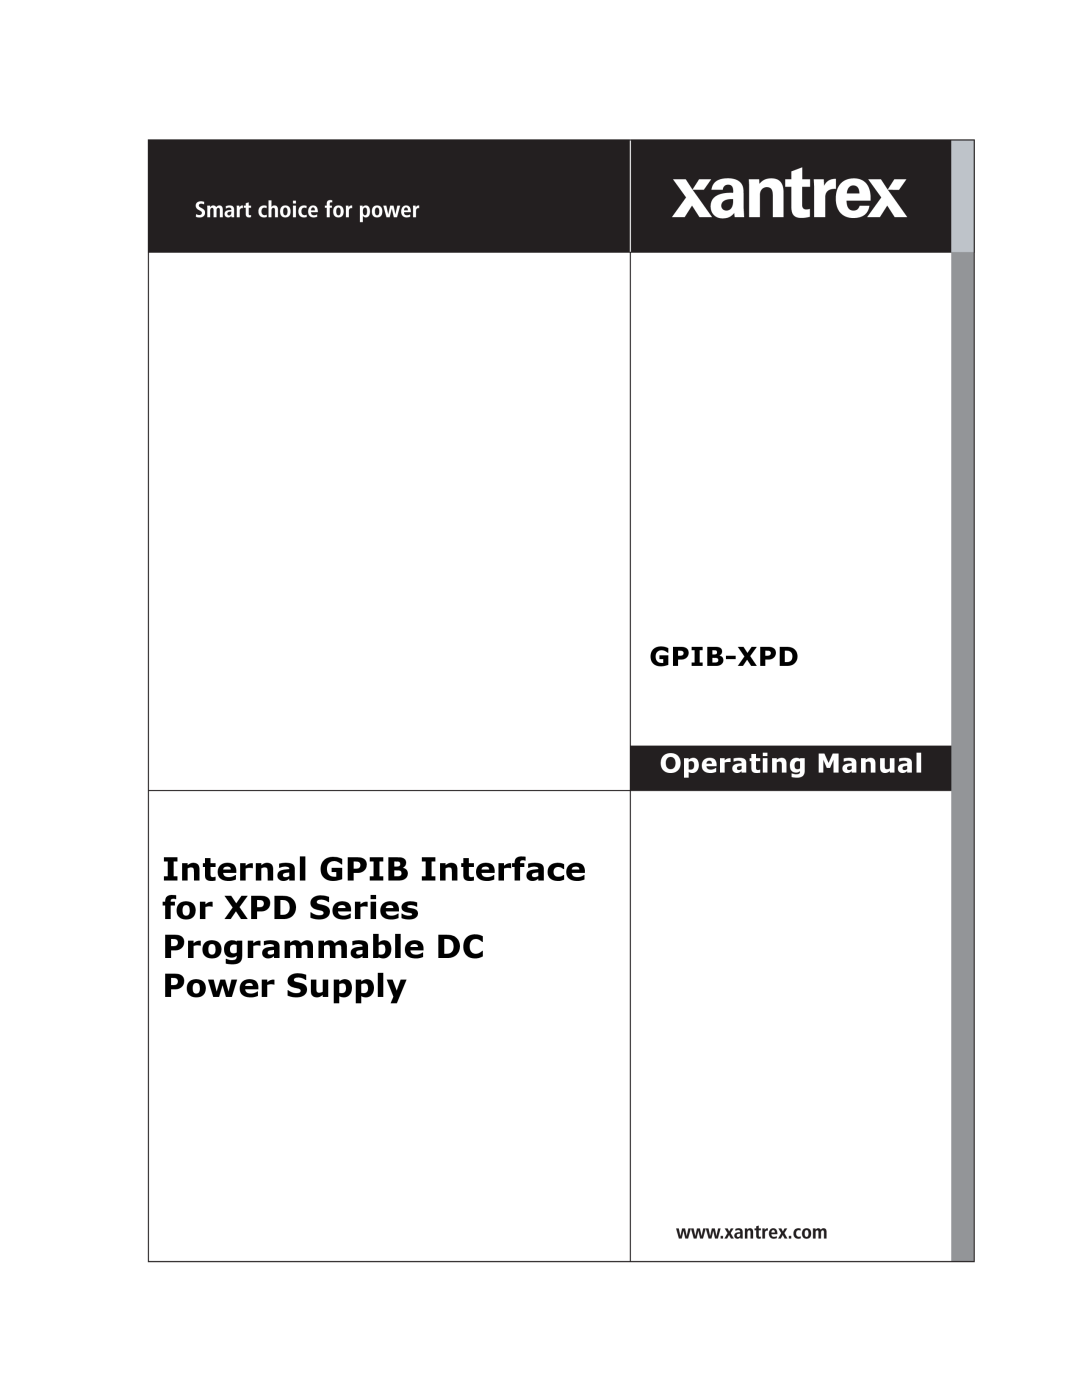 Xantrex Technology GPIB-XPD manual Internal GPIB Interface for XPD Series Programmable DC Power Supply, Gpib-Xpd 